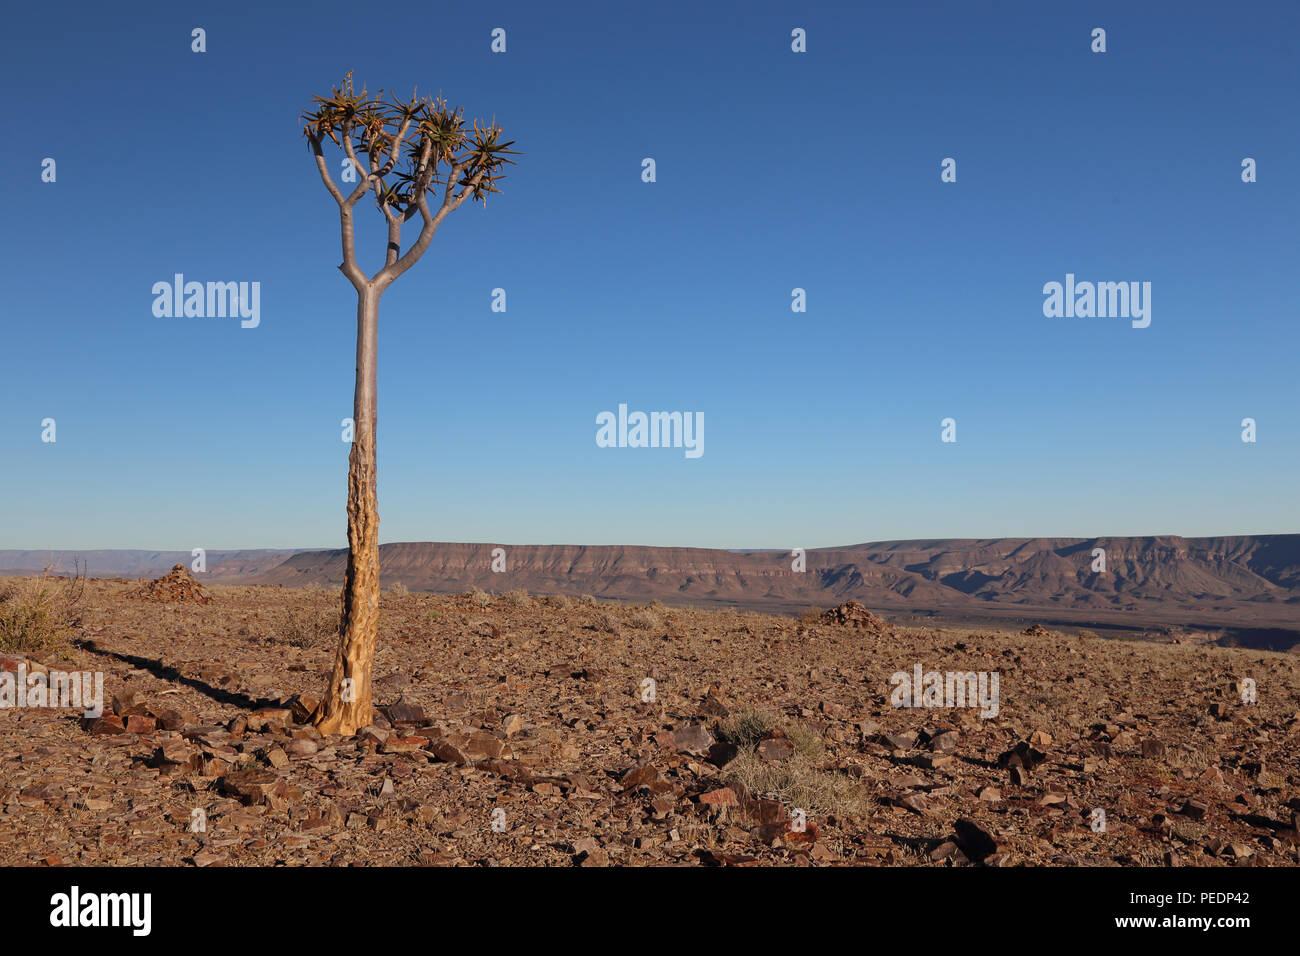 Faretra albero ((Aloidendron dichotomum) sul bordo del Fish River Canyon, Namibia, con l'impostazione luna in background. Foto Stock